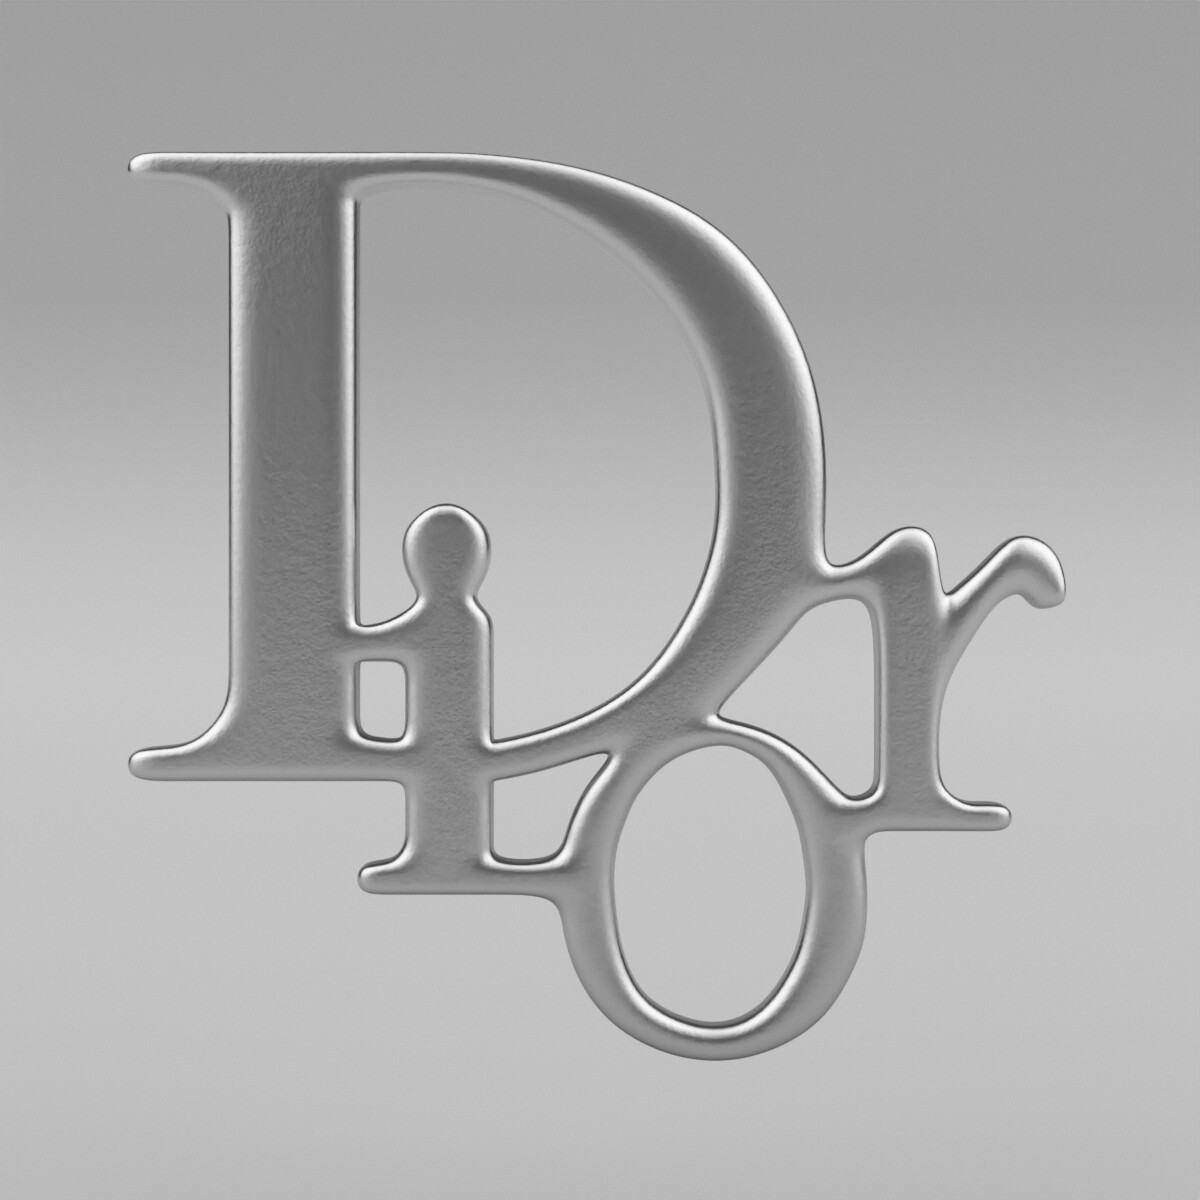 Dior Svg Dior Logo Svg Dior Bundle Svg Dior Vector Dior  Inspire Uplift